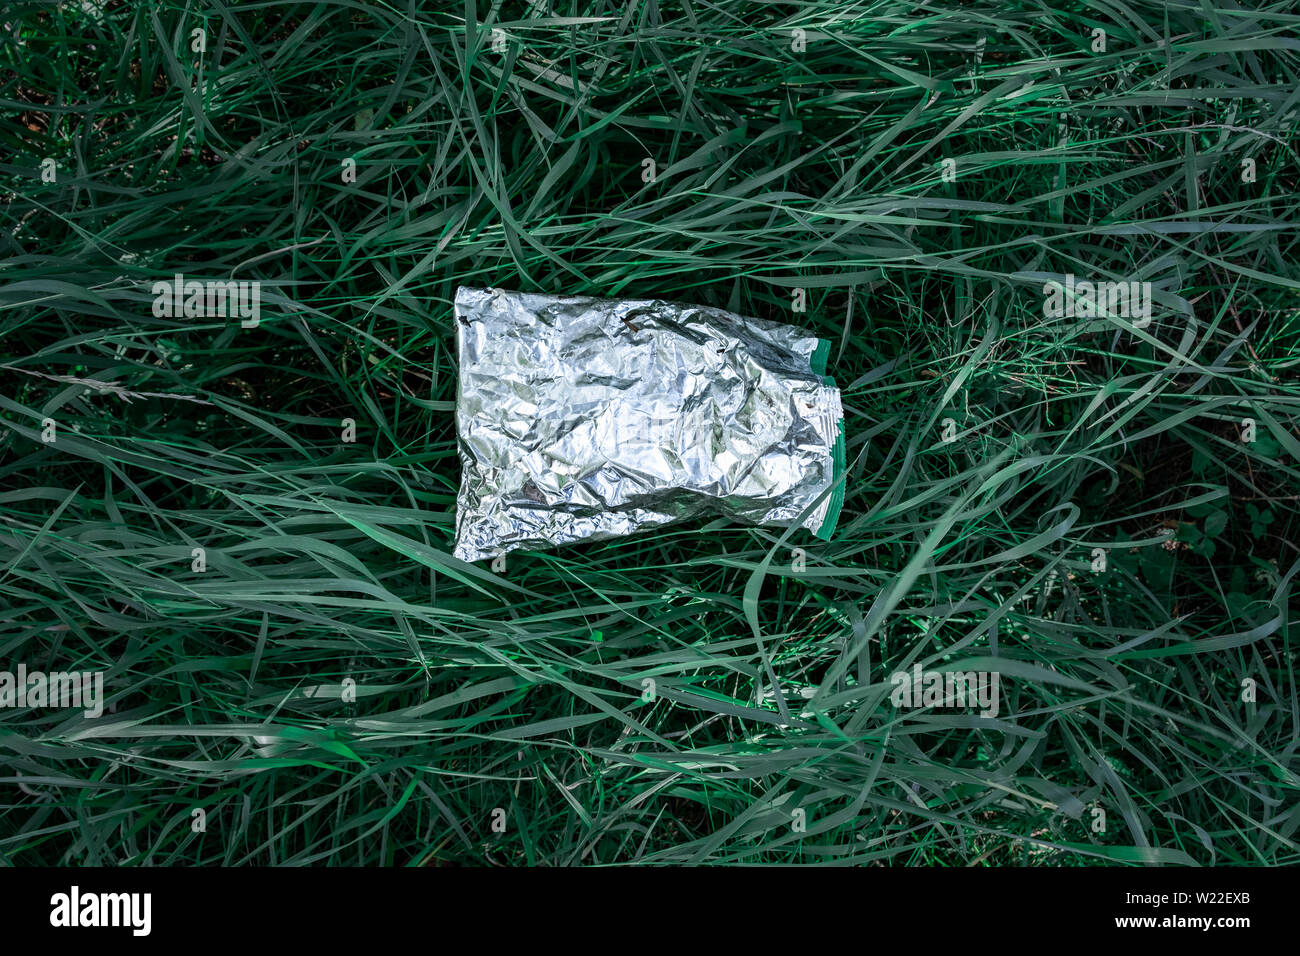 Sac en plastique dans l'herbe verte, la pollution de la nature concept. Morceau de déchets en plastique (vide emballage pour les produits alimentaires) jetés sur une pelouse Banque D'Images